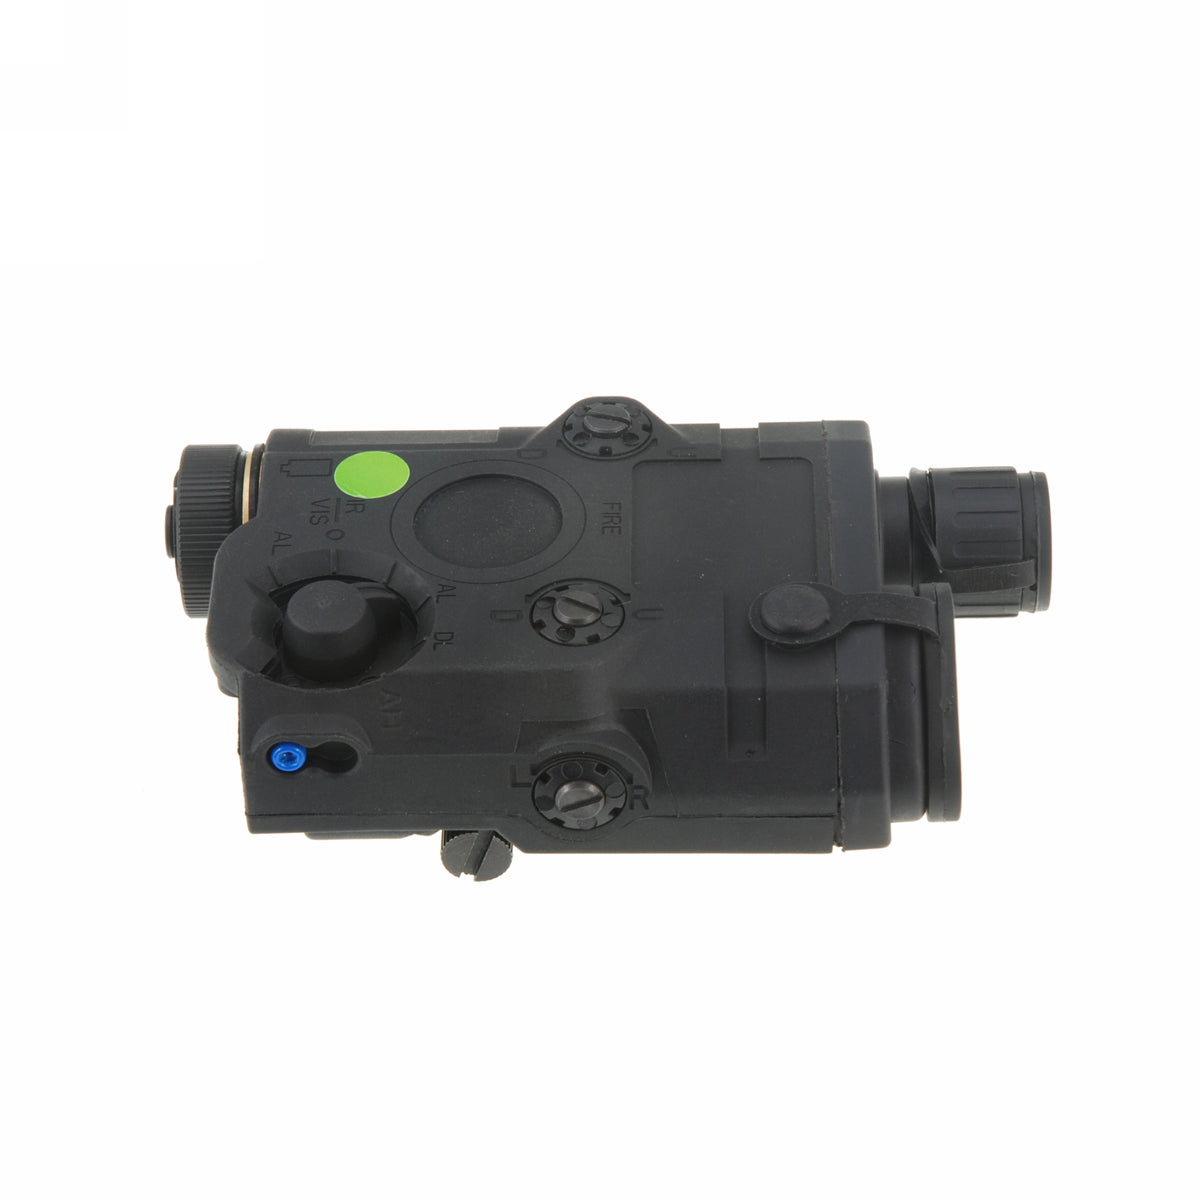 AN-PEQ-15 LED White Light w/Green Laser